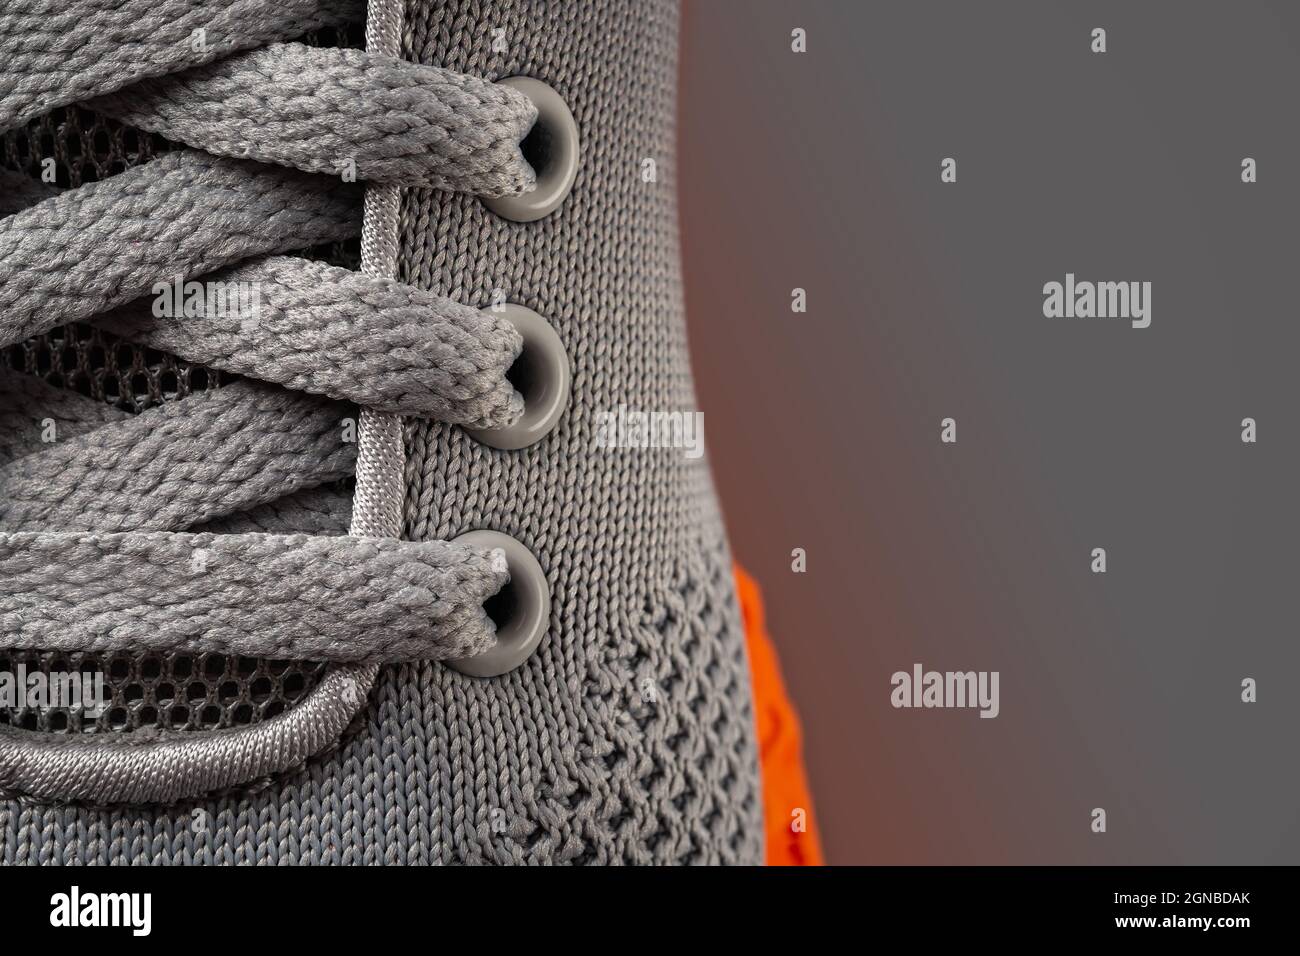 Sneakers aus grauem Mesh-Material mit Schnürung, Makroaufnahme.  Spitzenverschluss der neuen orangenen Sportschuhsohle aus nächster Nähe.  Moderne Textilschuhe elastische Schnürsenkel. Speicherplatz kopieren  Stockfotografie - Alamy